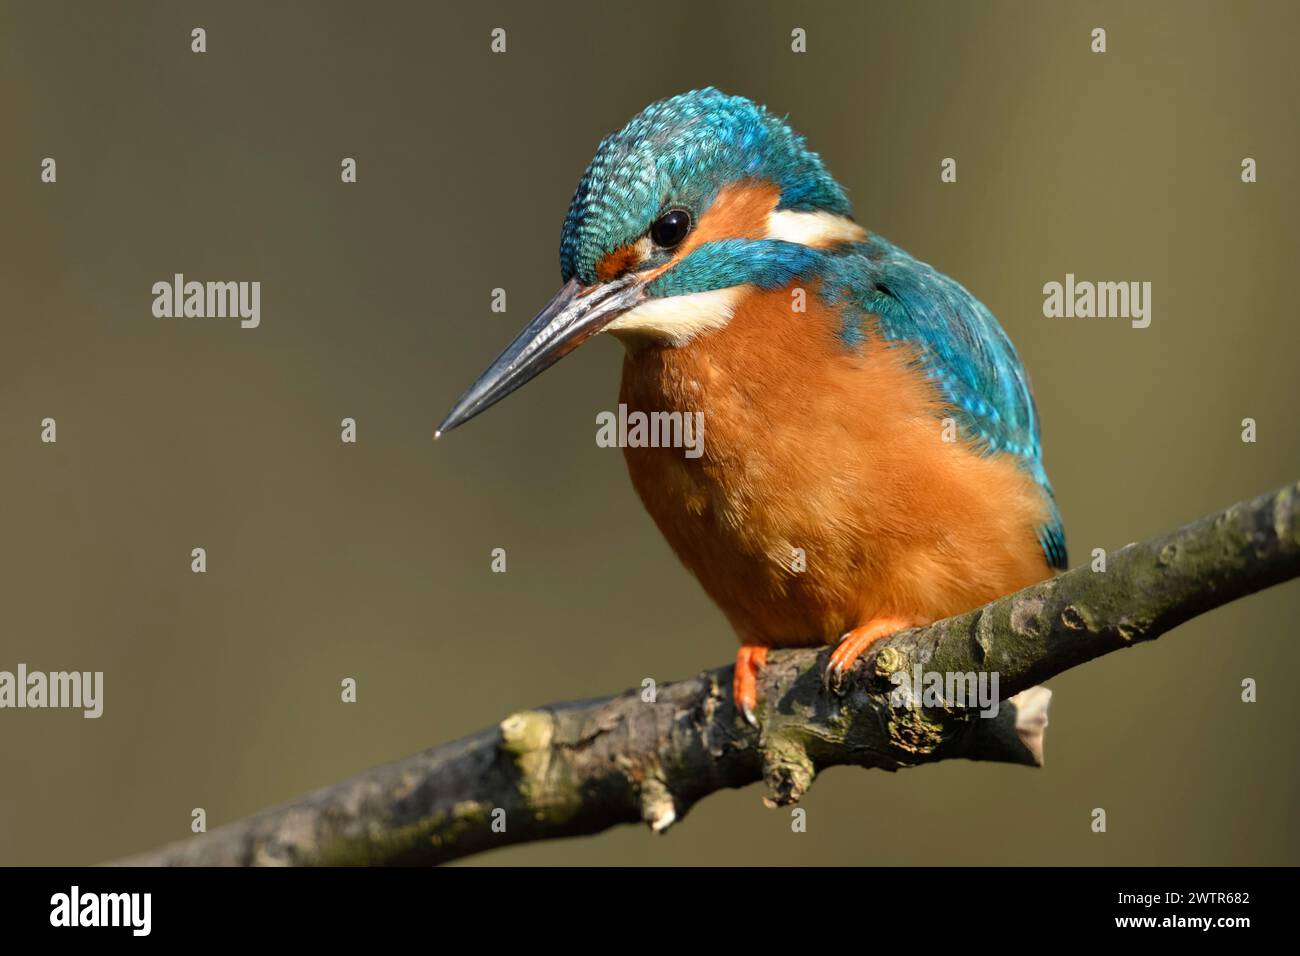 Kingfisher (Alcedo atthis), männlicher Vogel, auf einem Ast zur Jagd, detaillierte Frontansicht, schönes Licht, Tierwelt, Europa. Stockfoto